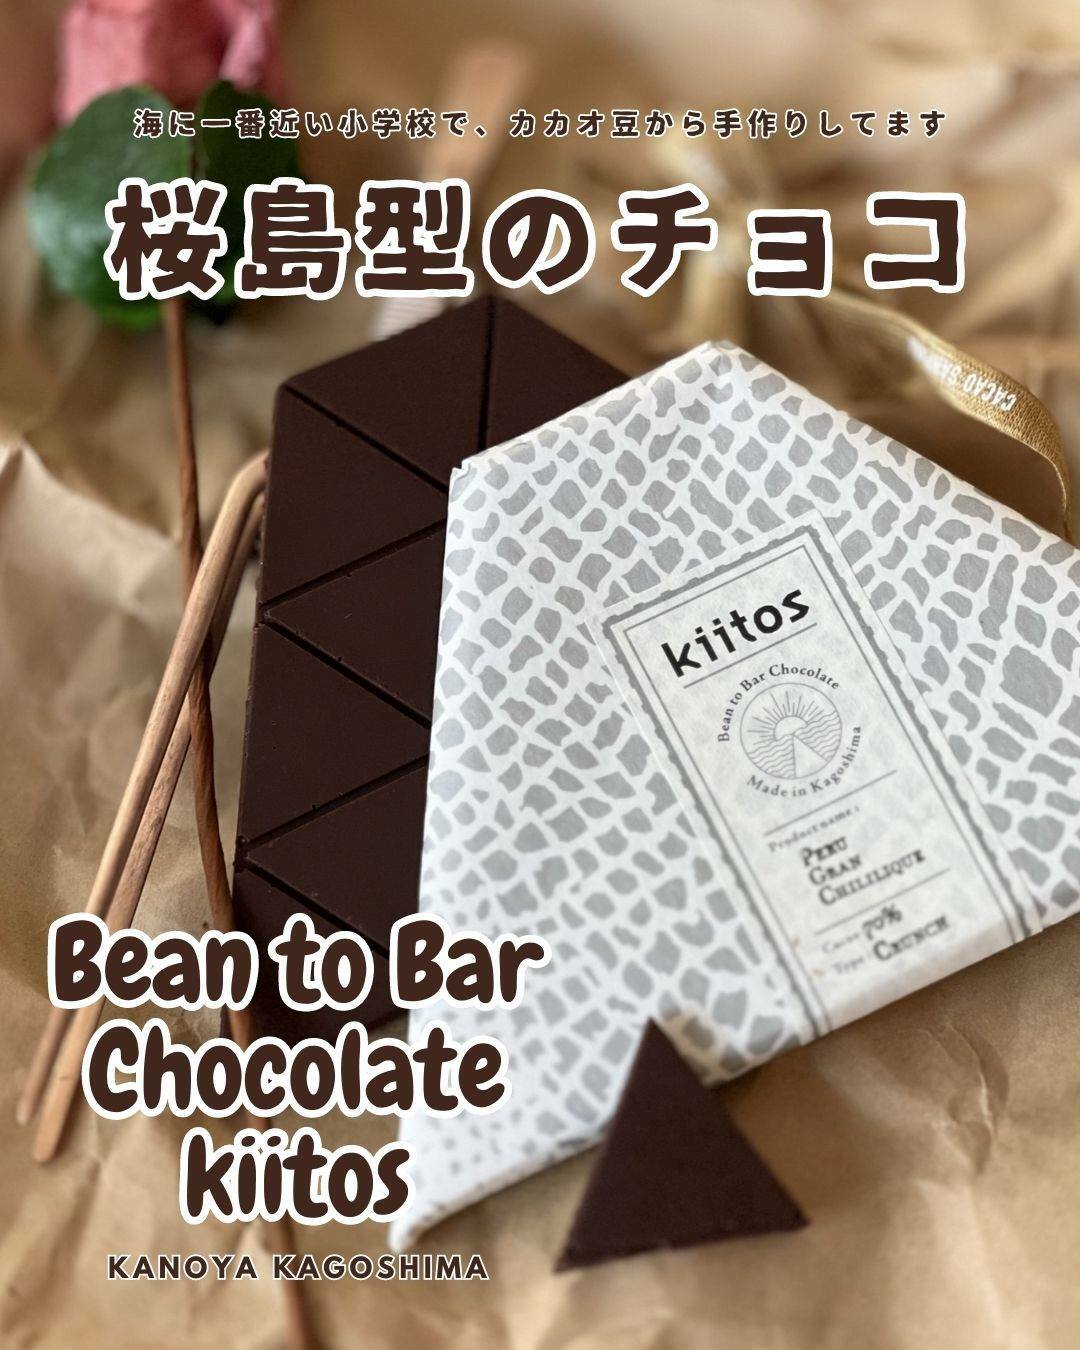 NHK Eテレ「バリバラ」で紹介！鹿児島のチョコレートショップ「kiitos